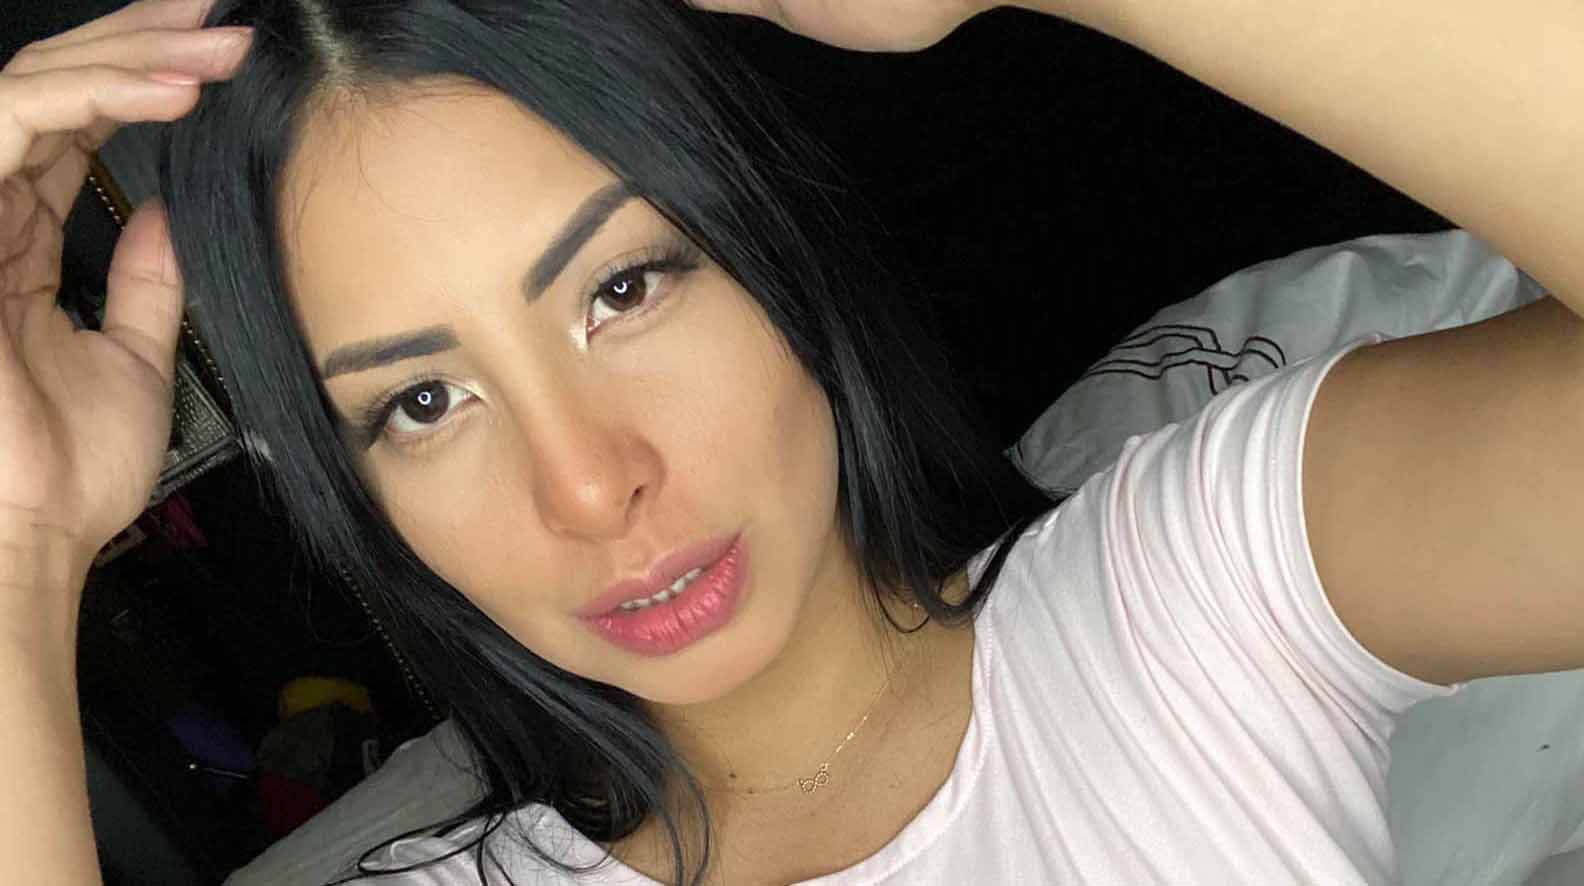 La modelo Luisa Espinoza es investigada por el supuesto delito de pornografía infantil. Foto: Facebook